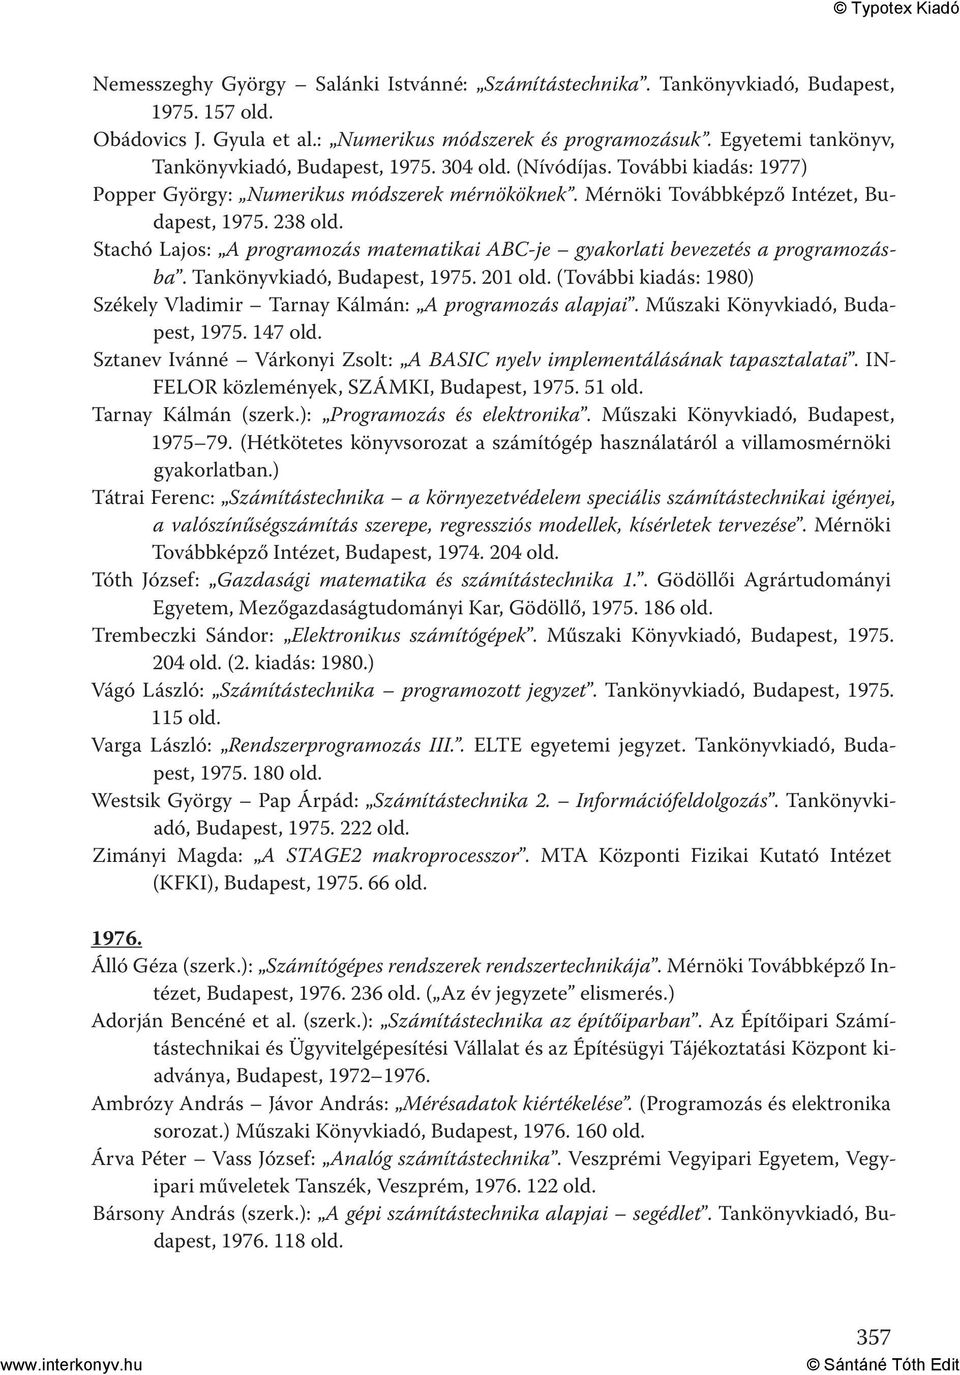 238 Stachó Lajos: A programozás matematikai ABC-je gyakorlati bevezetés a programozásba. Tankönyvkiadó, Budapest, 1975.